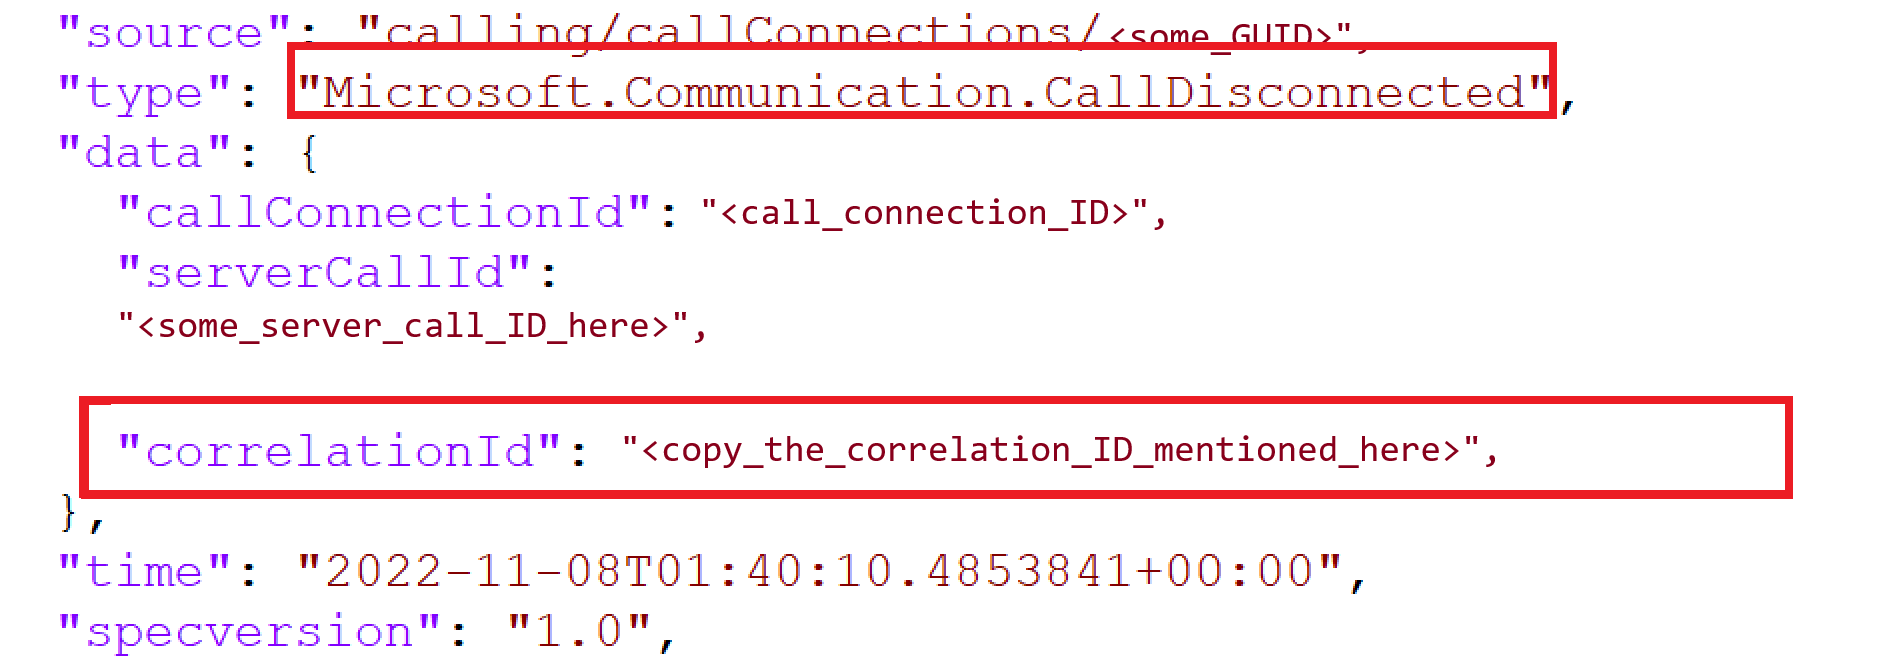 显示关联 ID 的调用断开连接事件的屏幕截图。